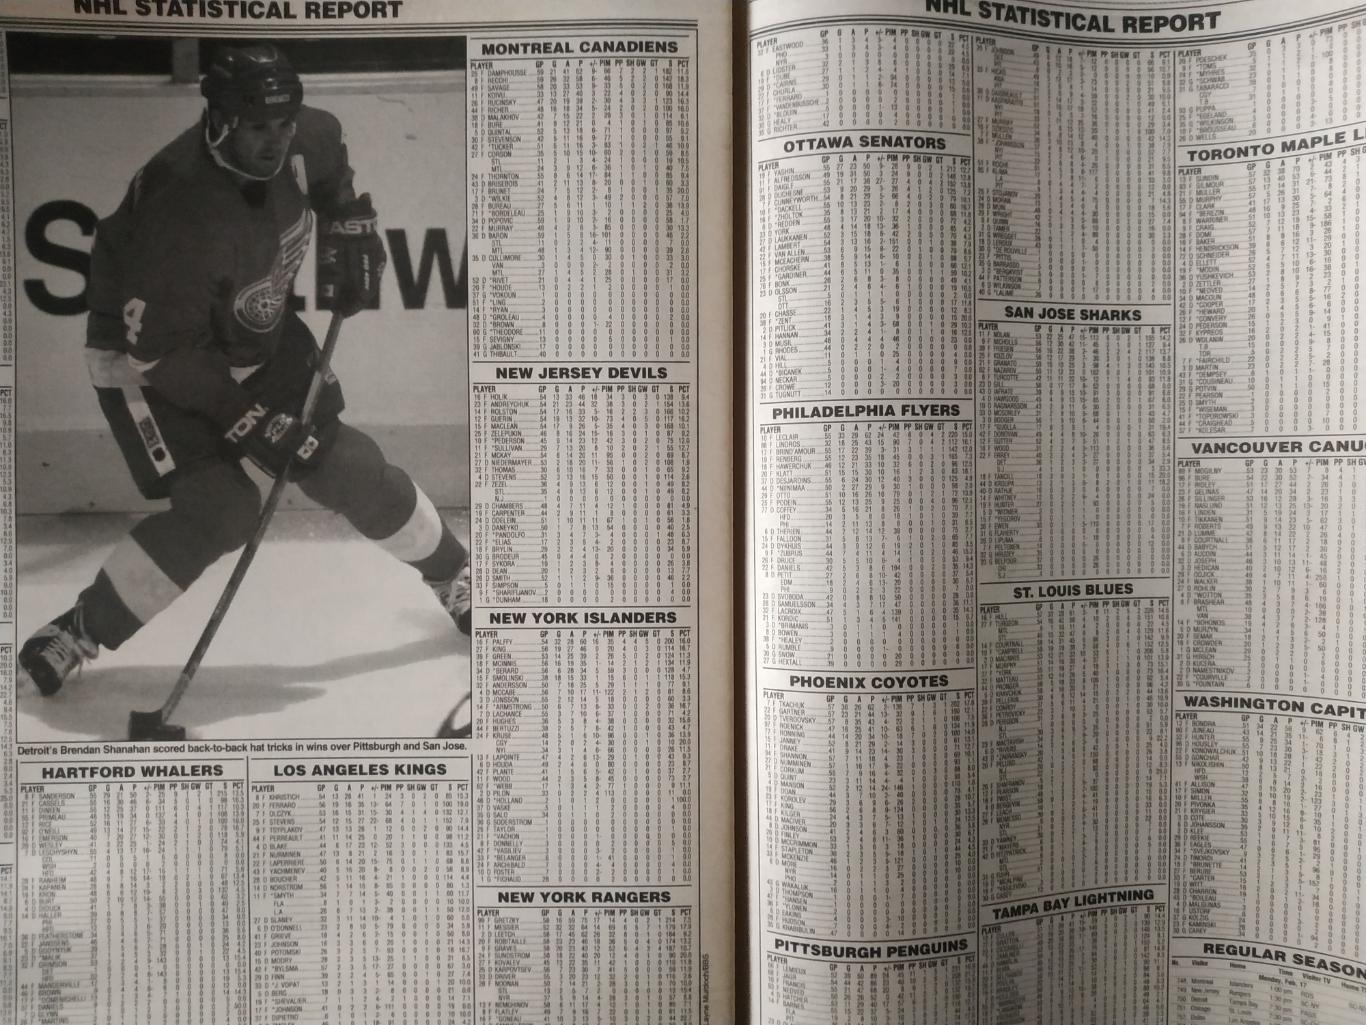 ХОККЕЙ ЖУРНАЛ ЕЖЕНЕДЕЛЬНИК НХЛ НОВОСТИ ХОККЕЯ NHL MAR.7 1997 THE HOCKEY NEWS 5